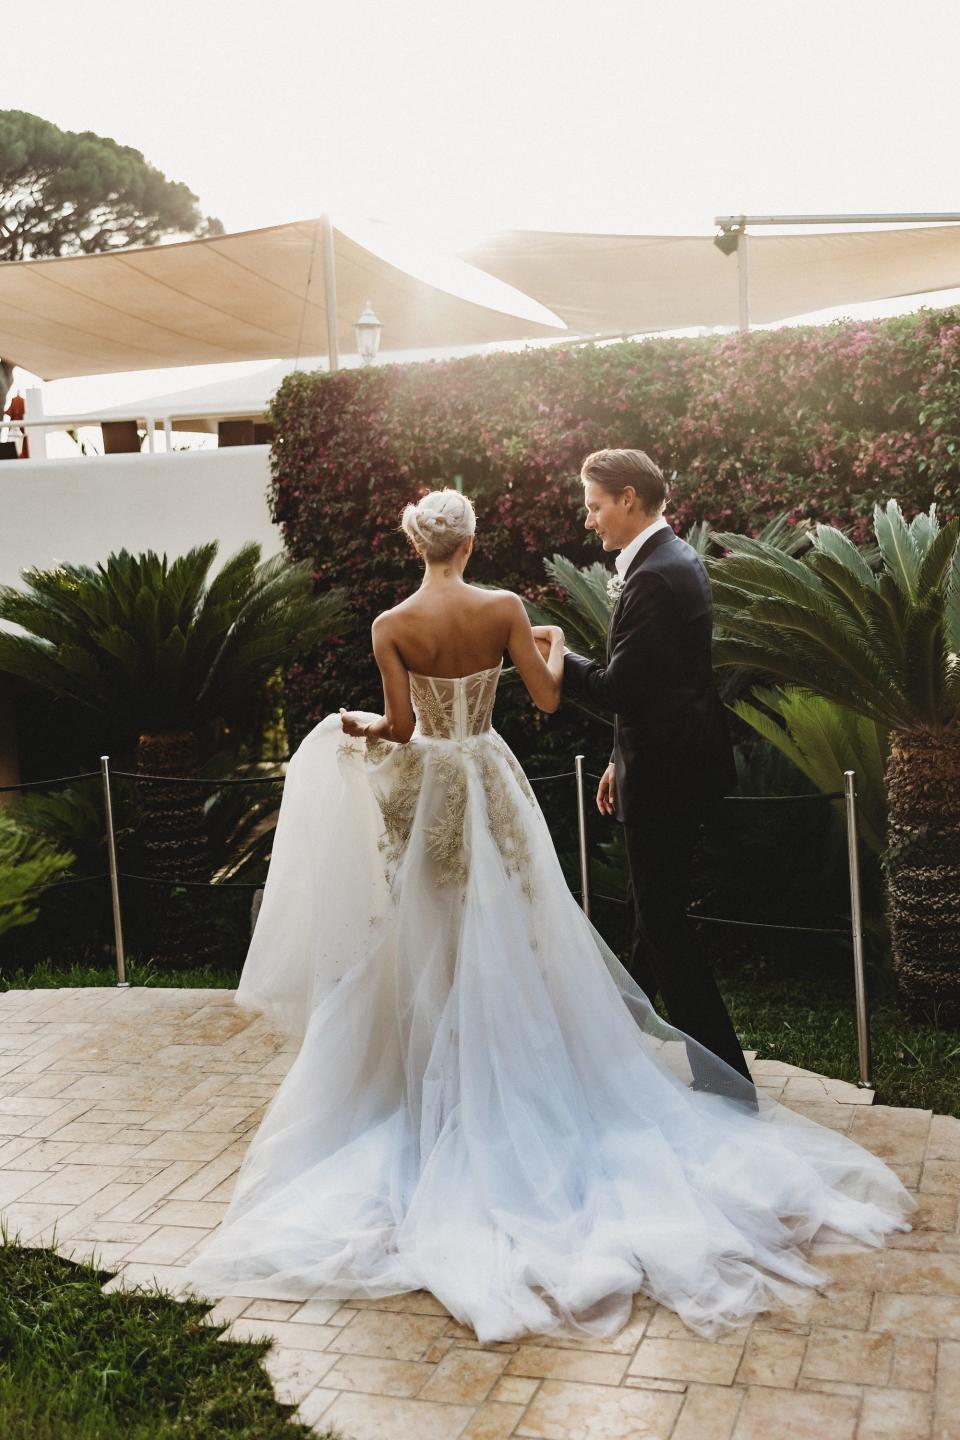 A groom helps a bride walk down a hill in a wedding dress.